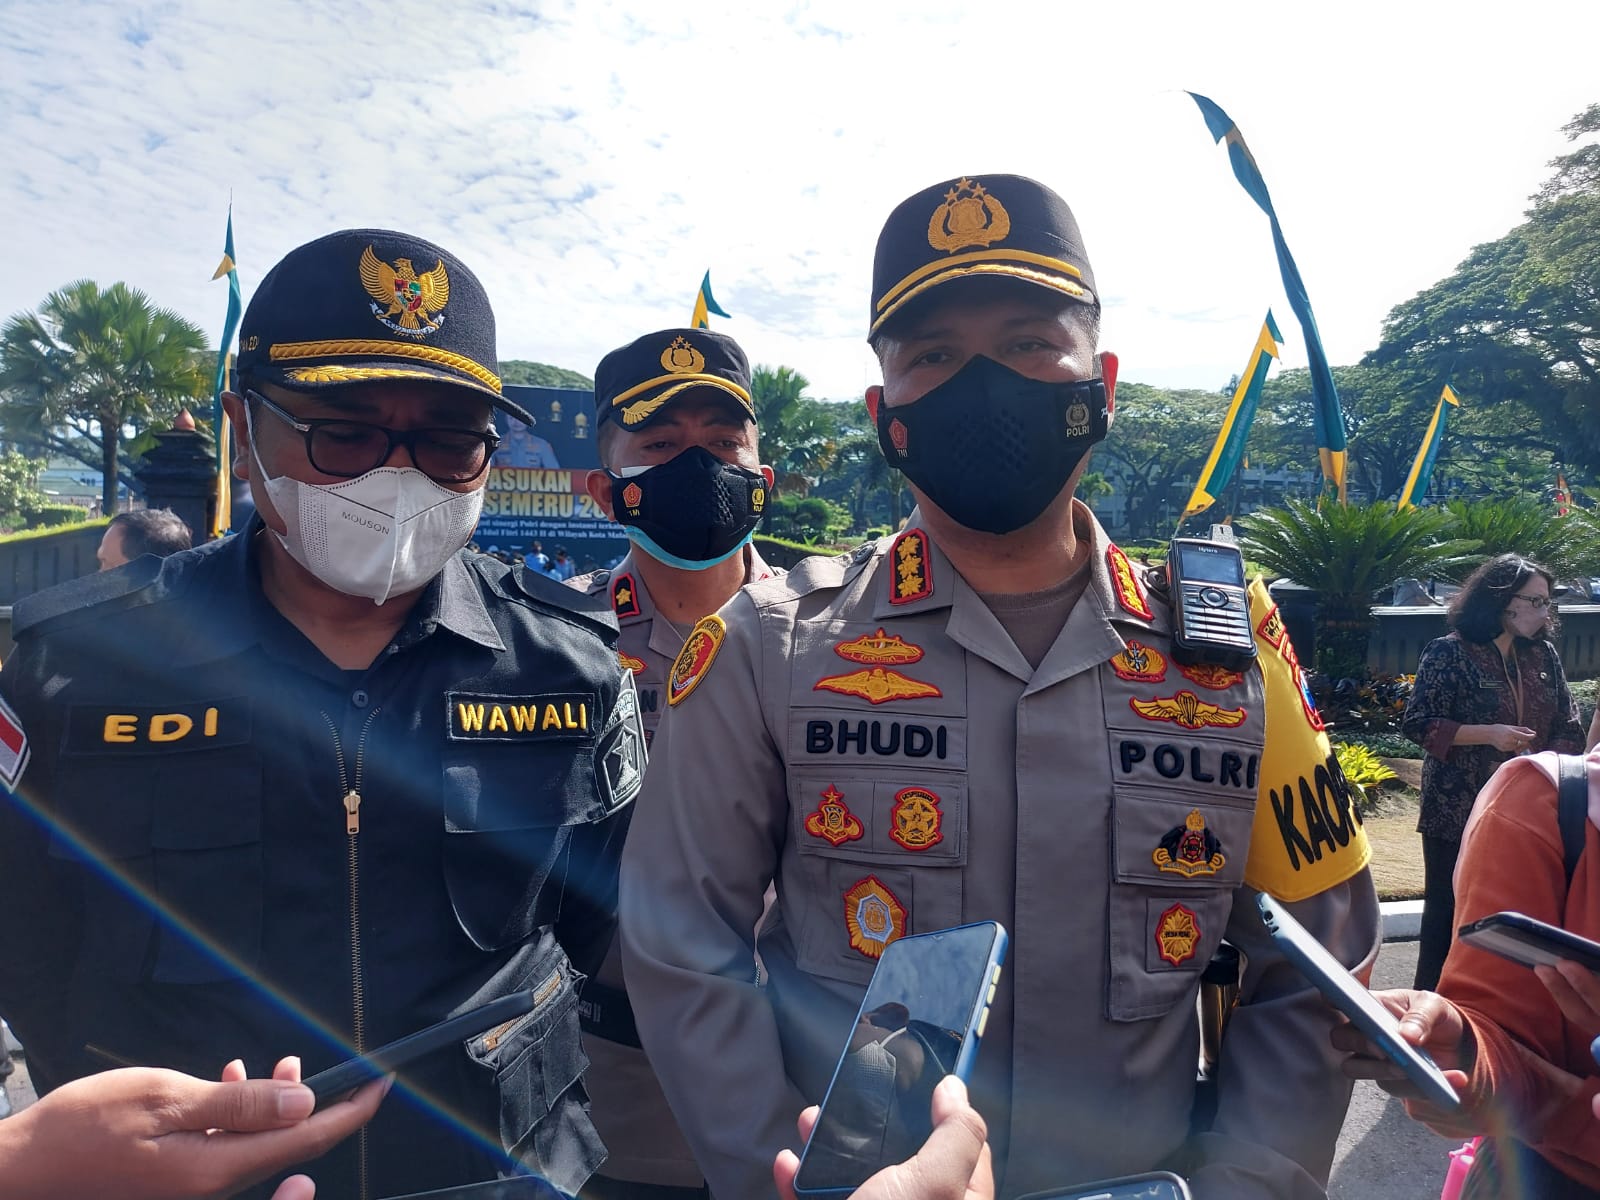 Antisipasi Kejahatan, Polisi Awasi Rumah Warga Kota Malang yang Ditinggal Mudik